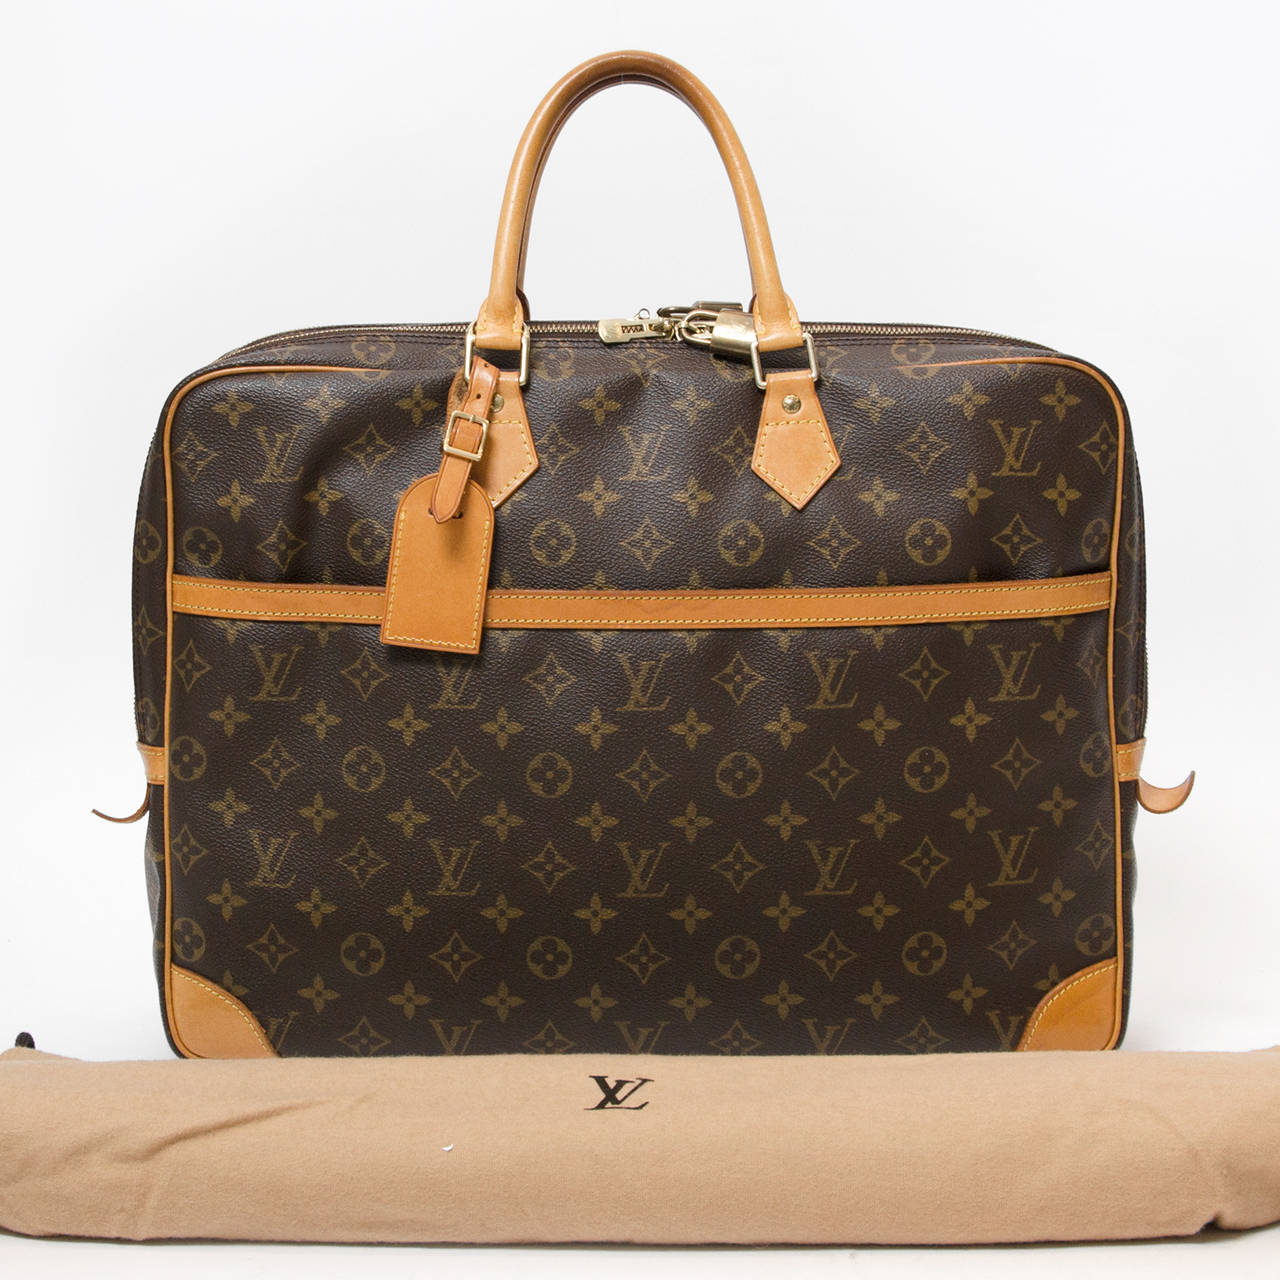 Louis Vuitton Monogram Laptop Bag at 1stdibs